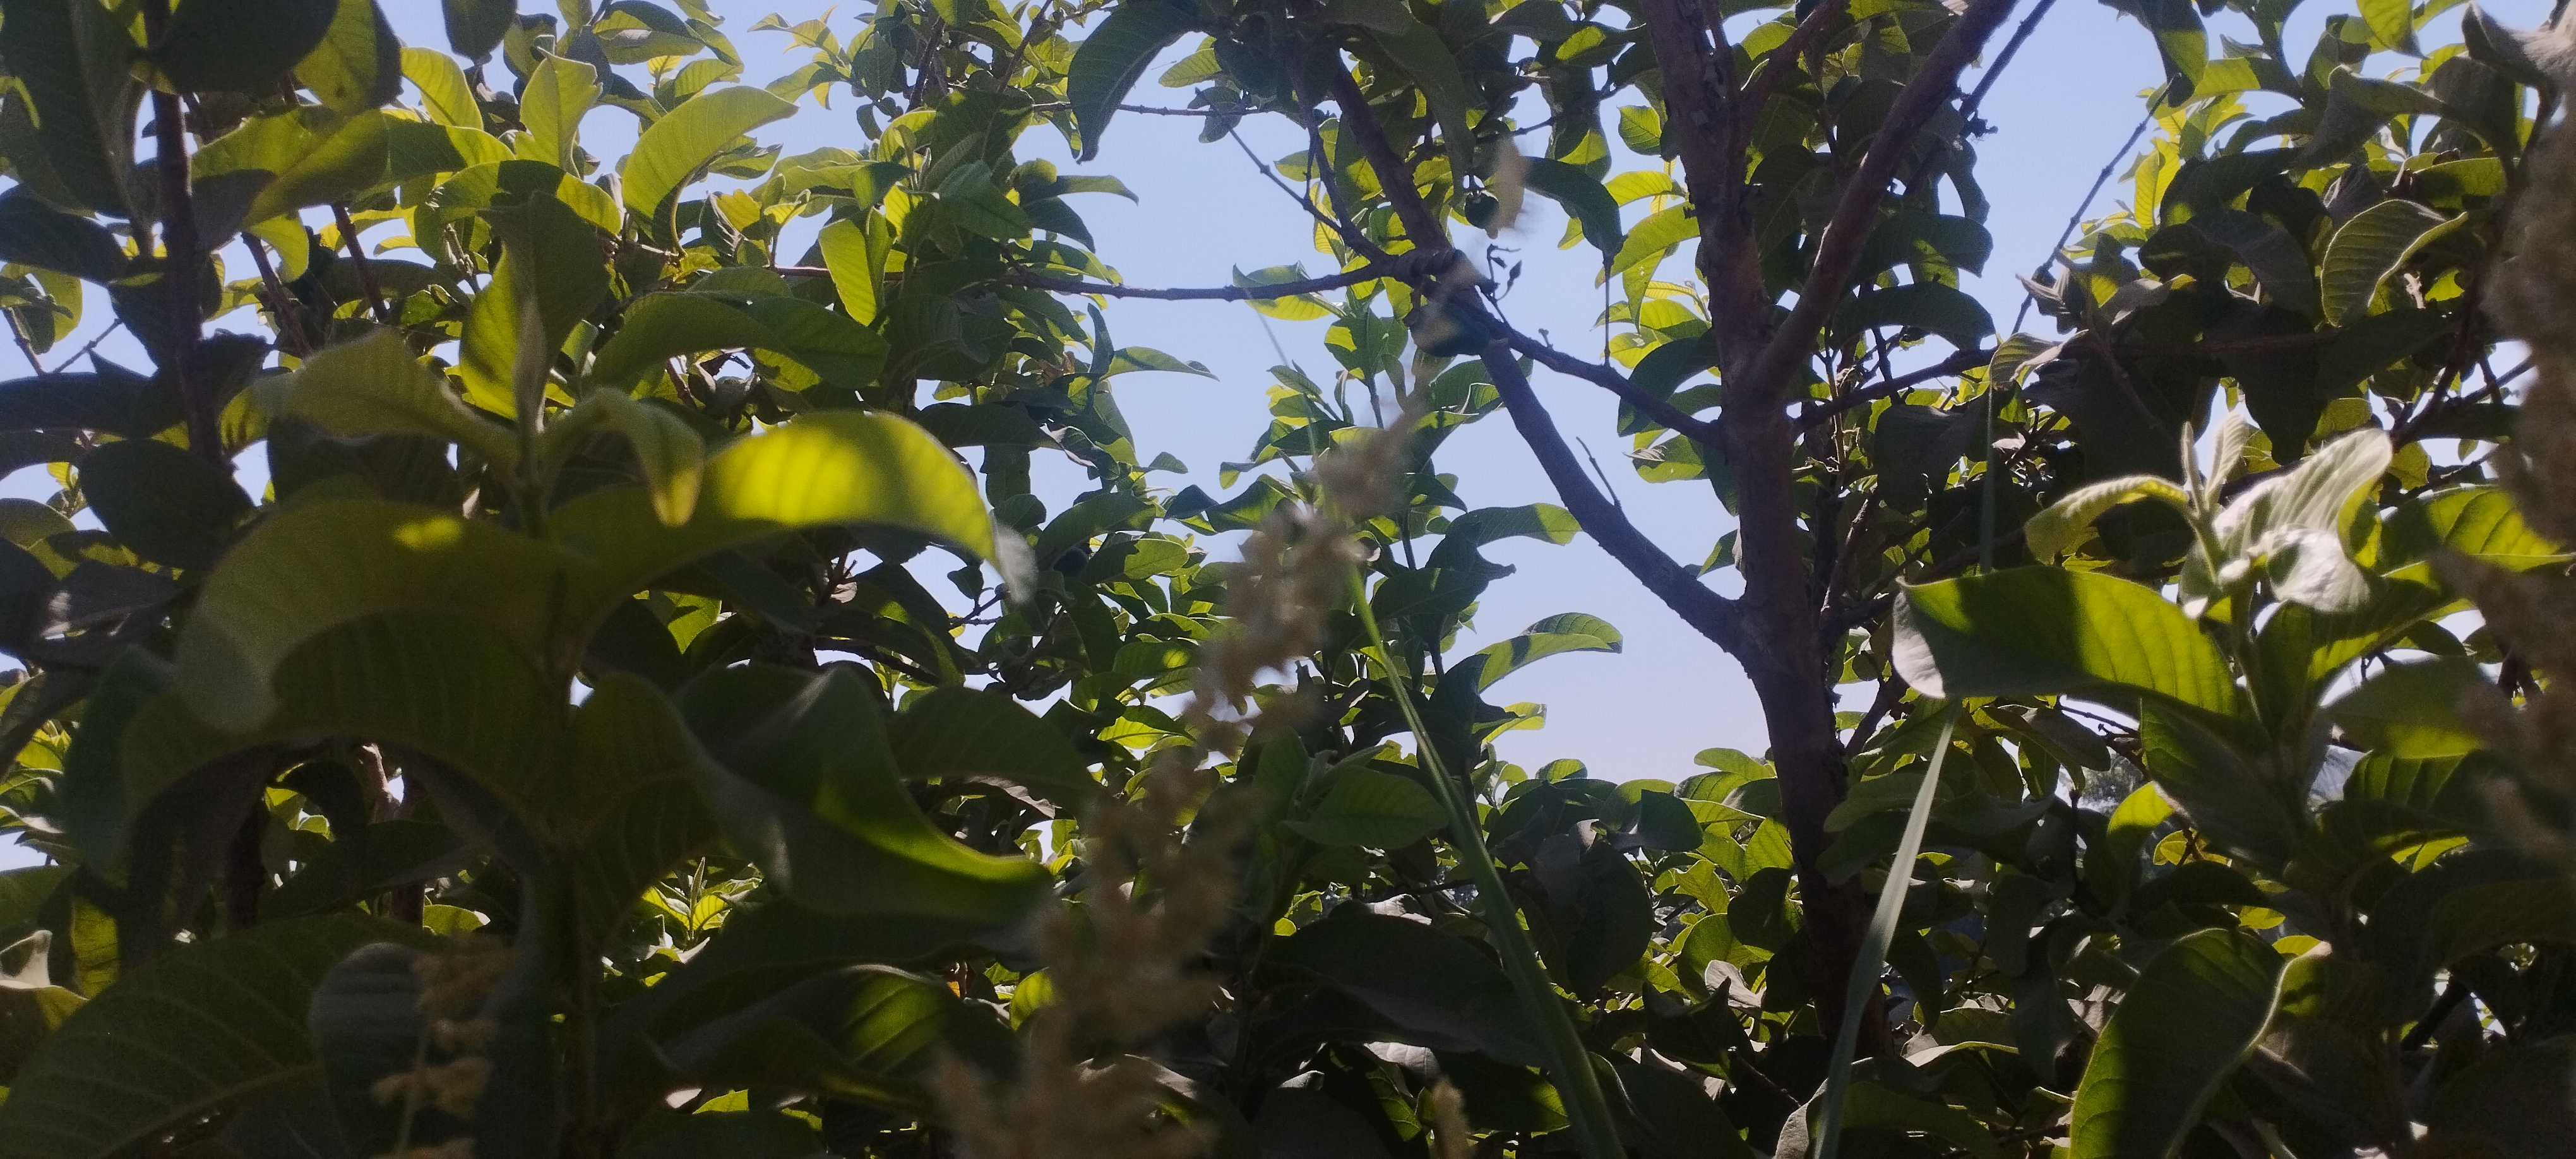 أشجار الجوافة تزين مزارع المنيا (5)